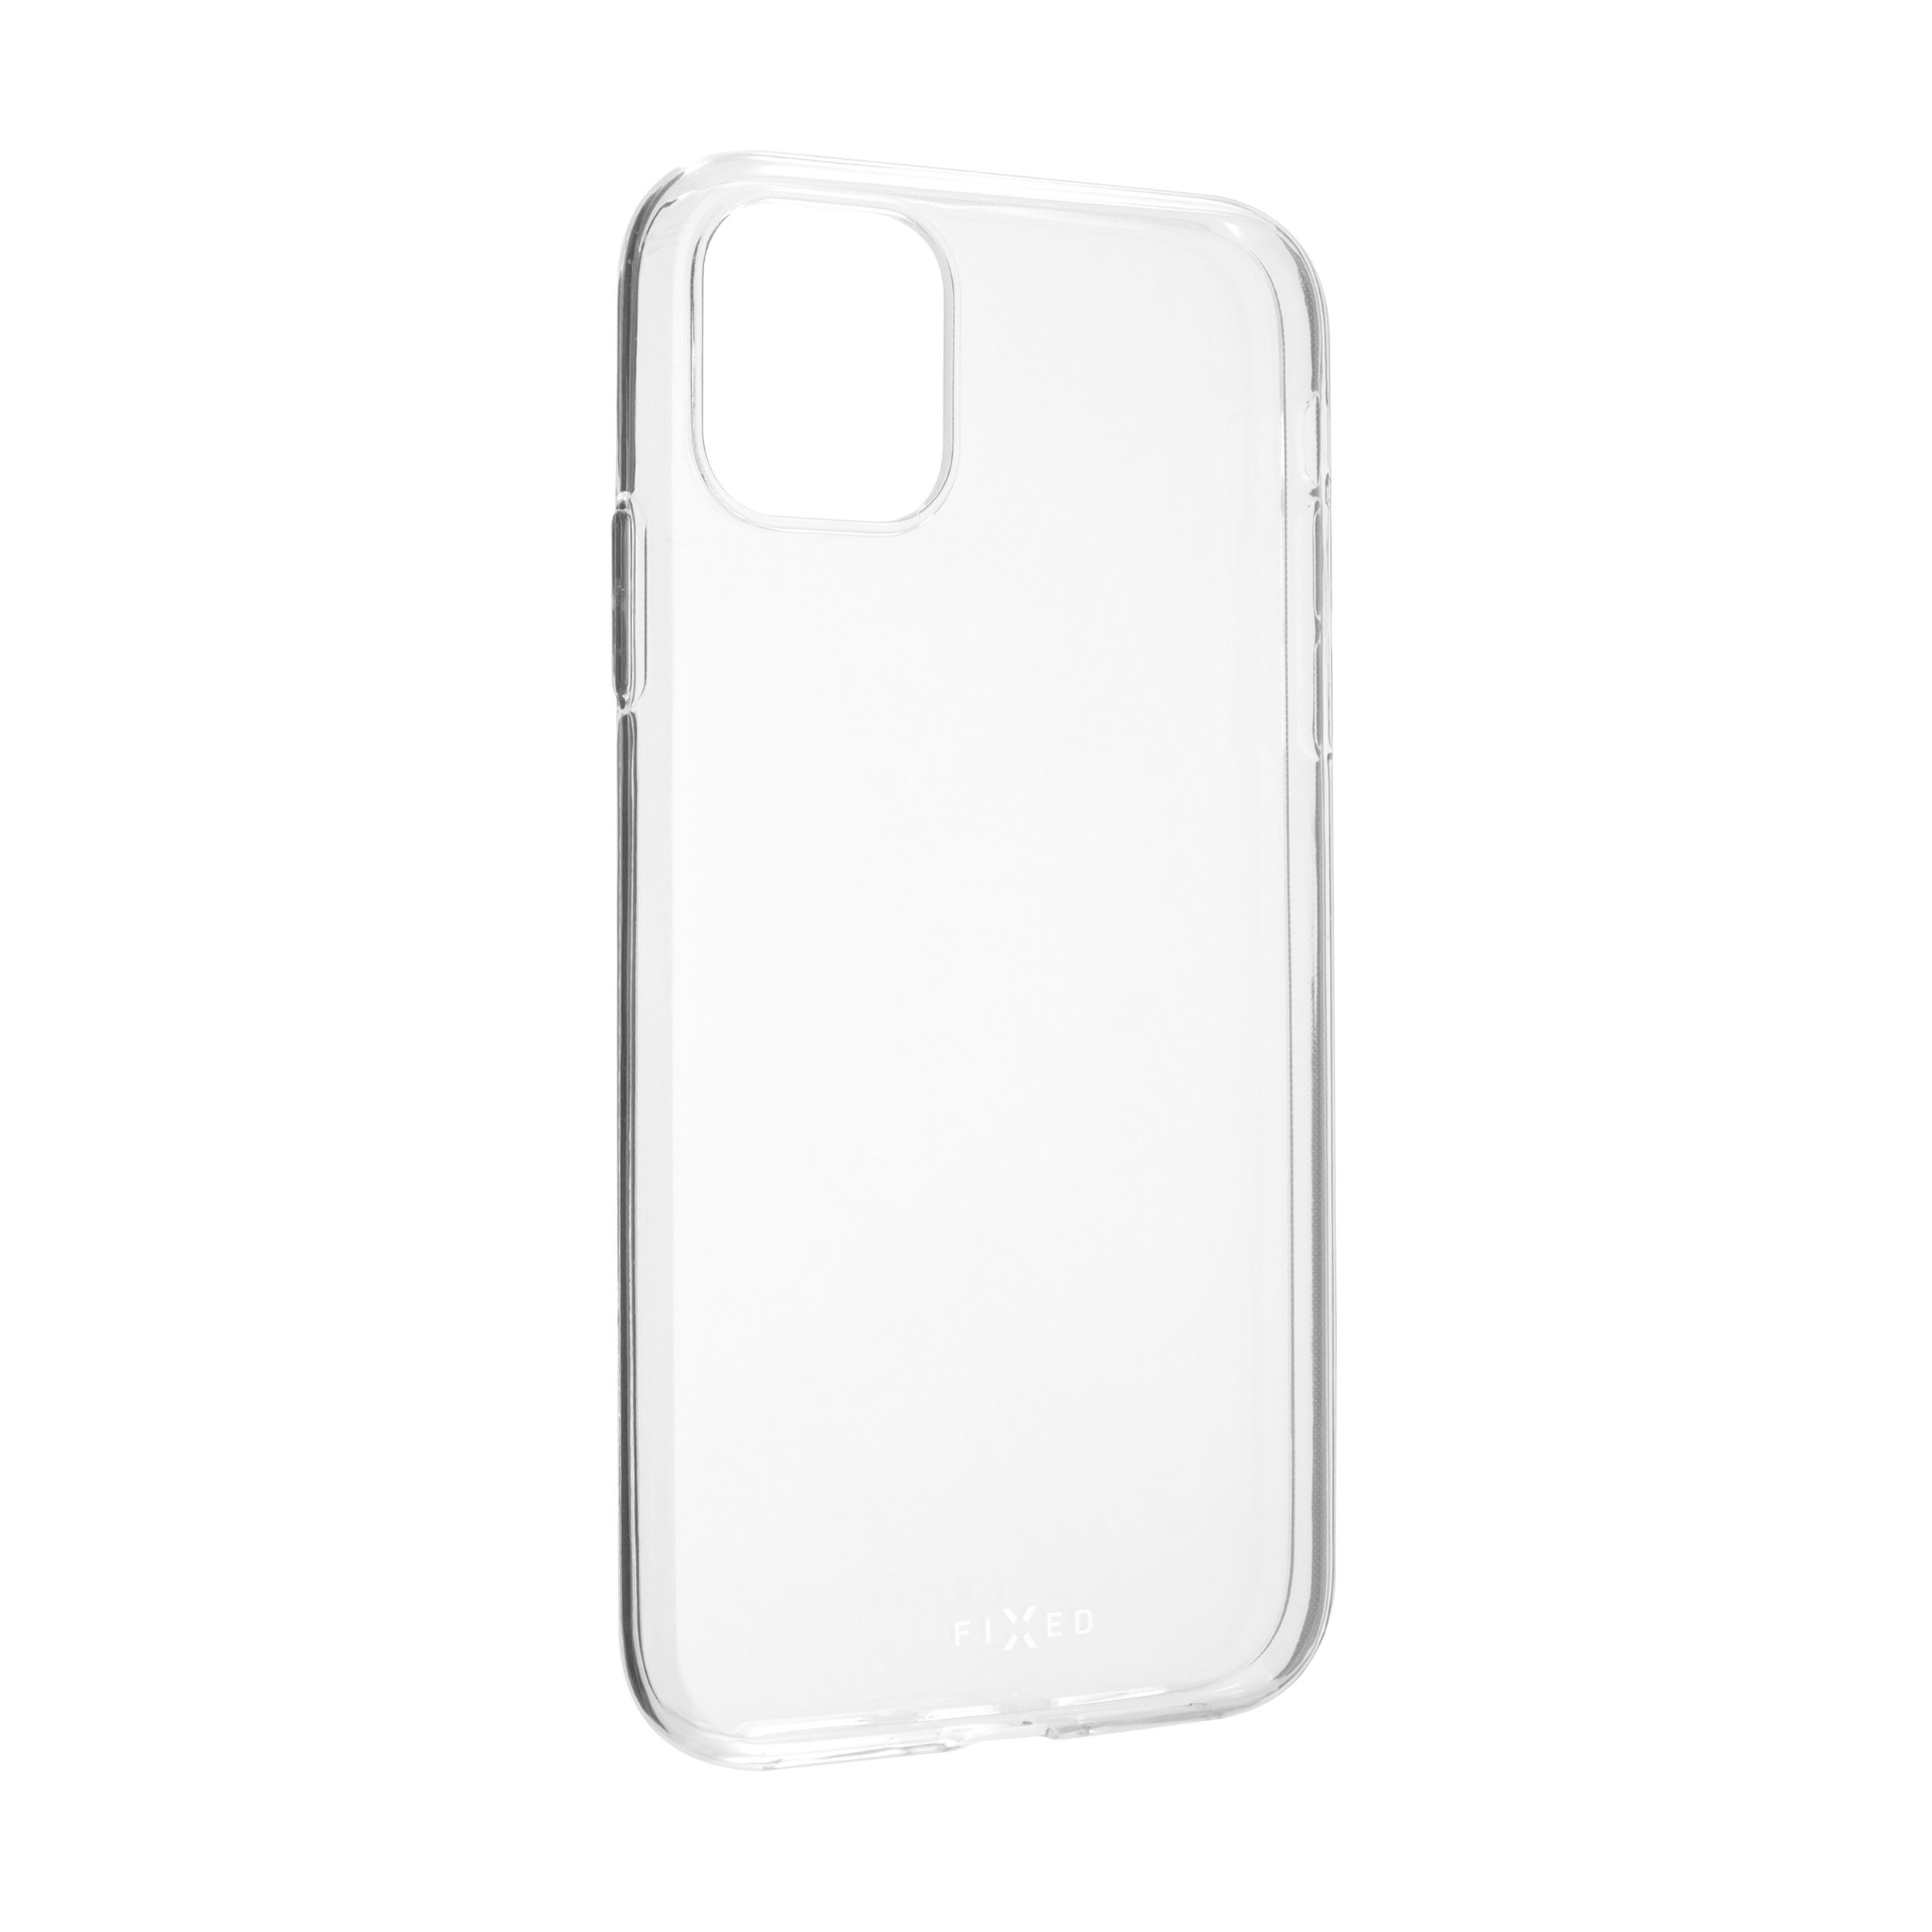 TPU gelové pouzdro pro Apple iPhone 11, čiré